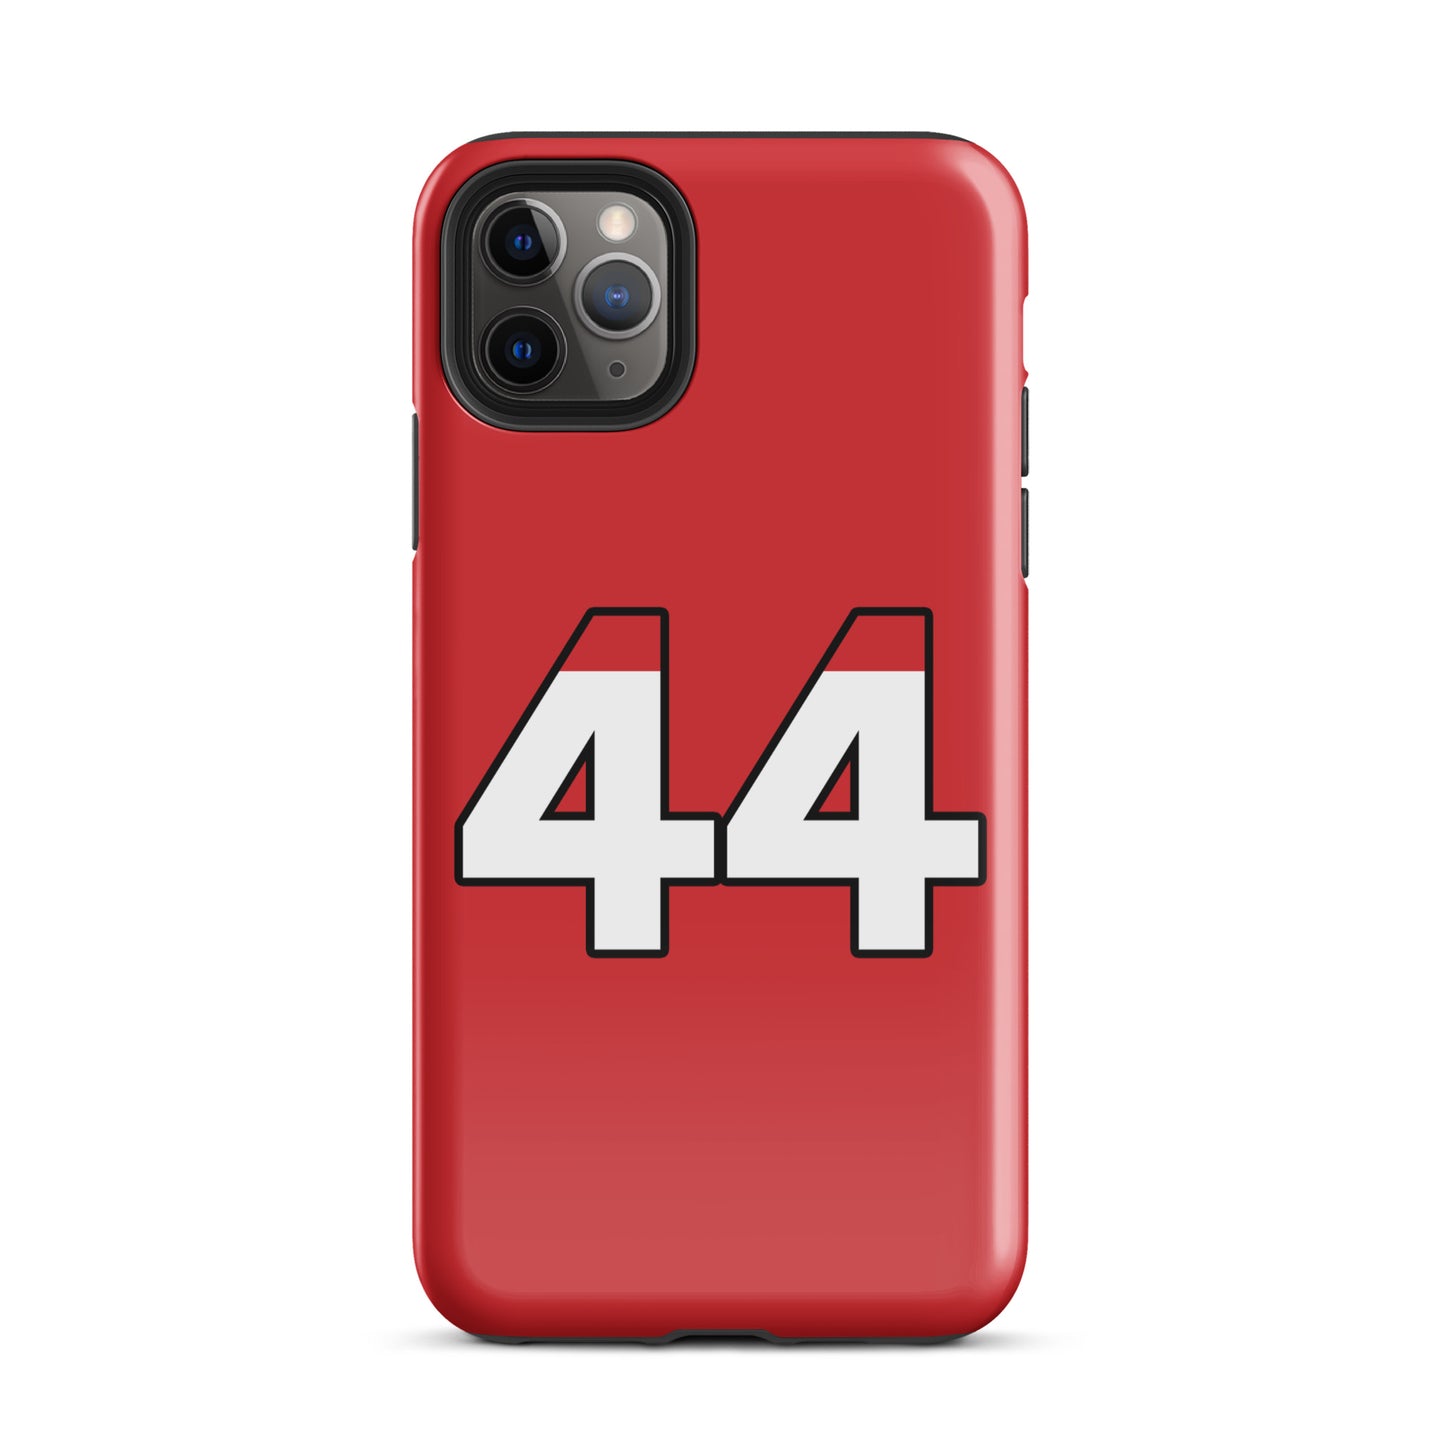 Lewis Hamilton Tough Ferrari iPhone 11 pro max case